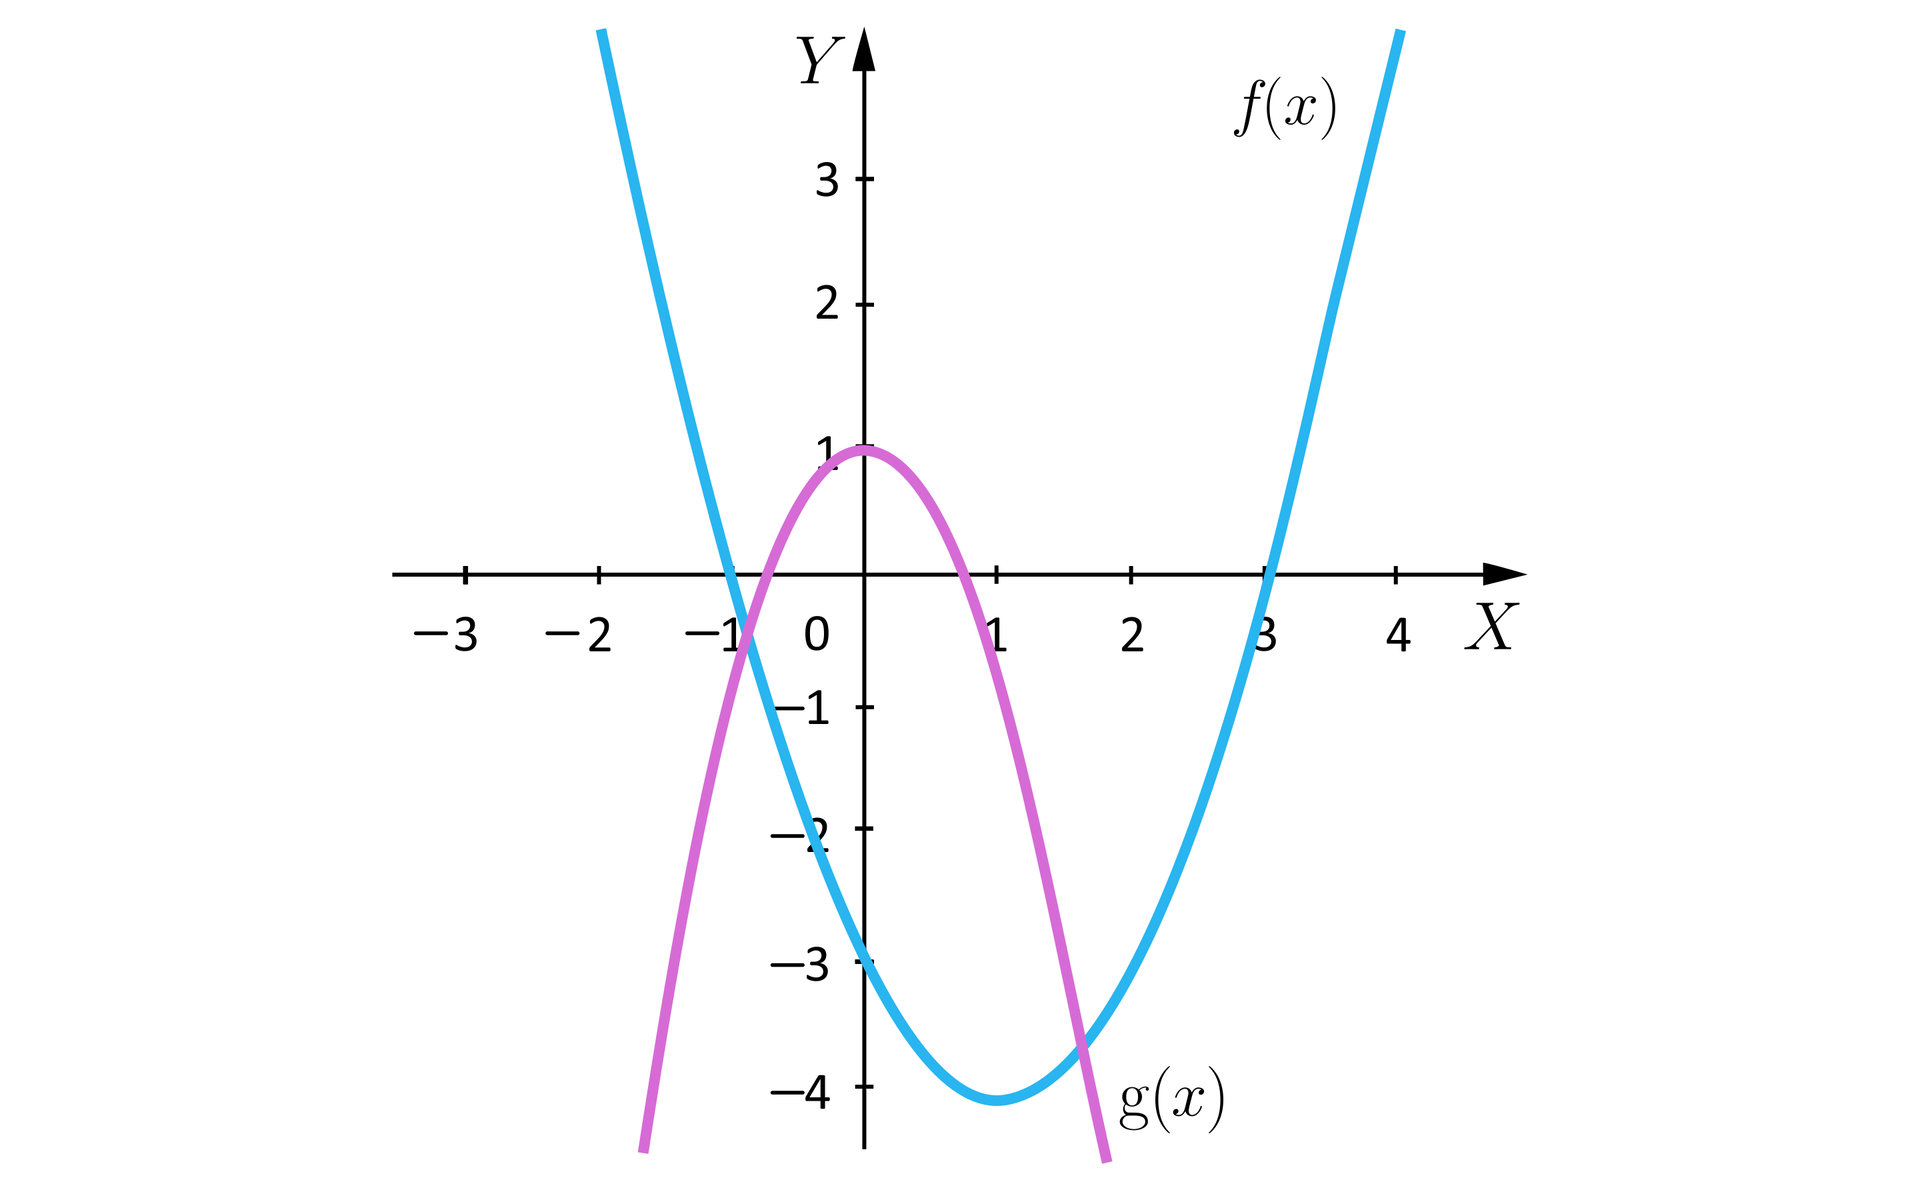 Rysunek przedstawia układ współrzędnych z poziomą osią X od minus czterech do czterech oraz pionową osią Y od minus czterech do czterech. Na płaszczyźnie narysowane są dwie parabole. Pierwsza określona funkcją  f o wierzchołku w punkcie 1;-4 z ramionami skierowanymi w górę. Parabola ta przecina oś Y w punkcie 0;-3. Druga parabola określona jest funkcją g. Jej wierzchołek znajduje się w punkcie 0;1, a jej ramiona skierowane są do dołu. Z rysunku wynika, że parabole mają dwa miejsca przecięcia.